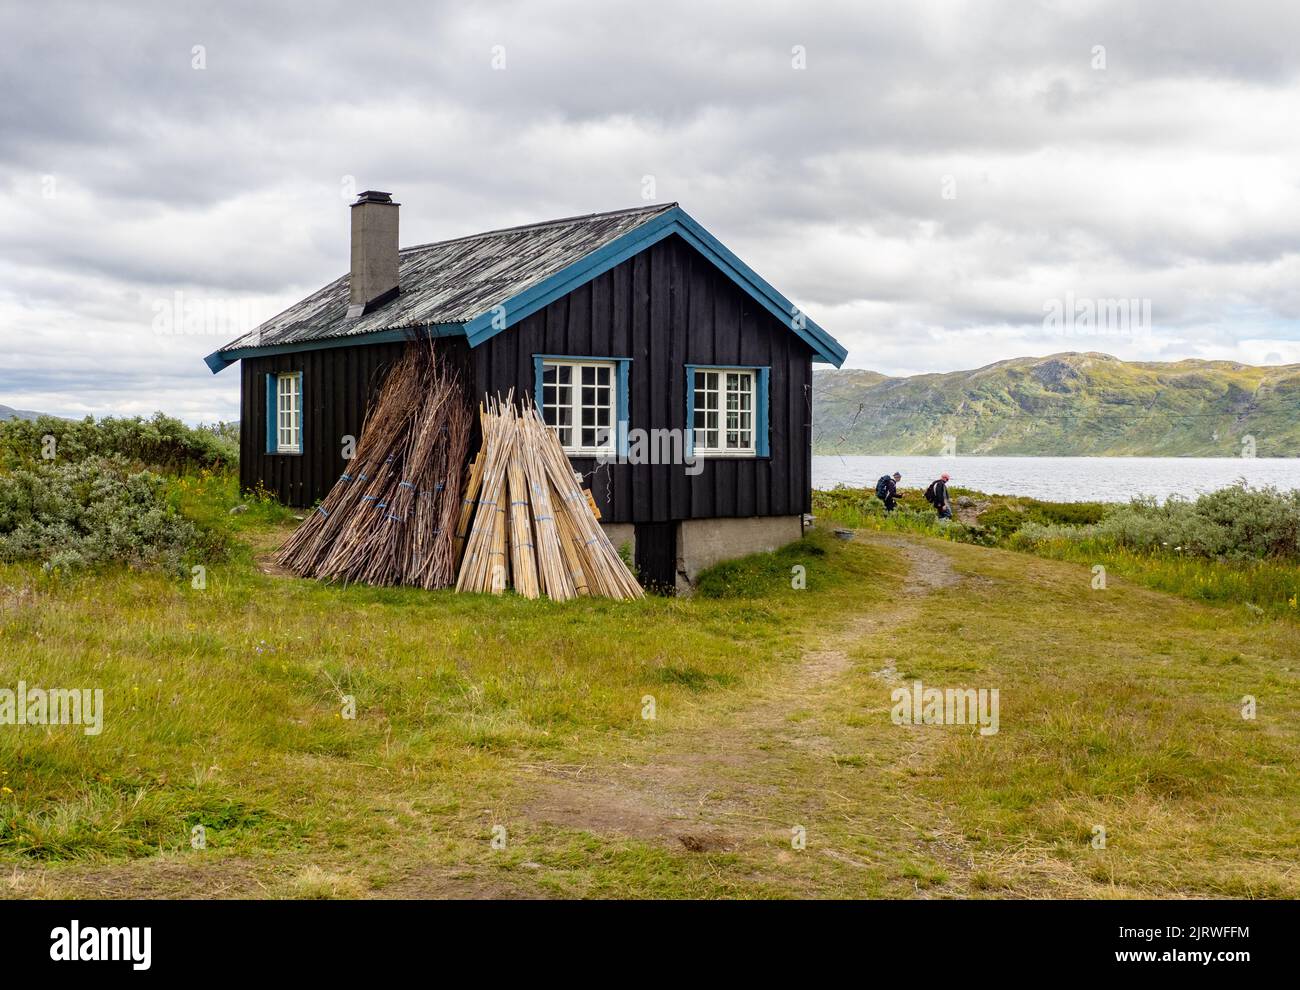 Refuge de la DNT à Torfinnsbu sur les rives du lac Bygdin dans le parc national de Jotunheimen en Norvège Banque D'Images